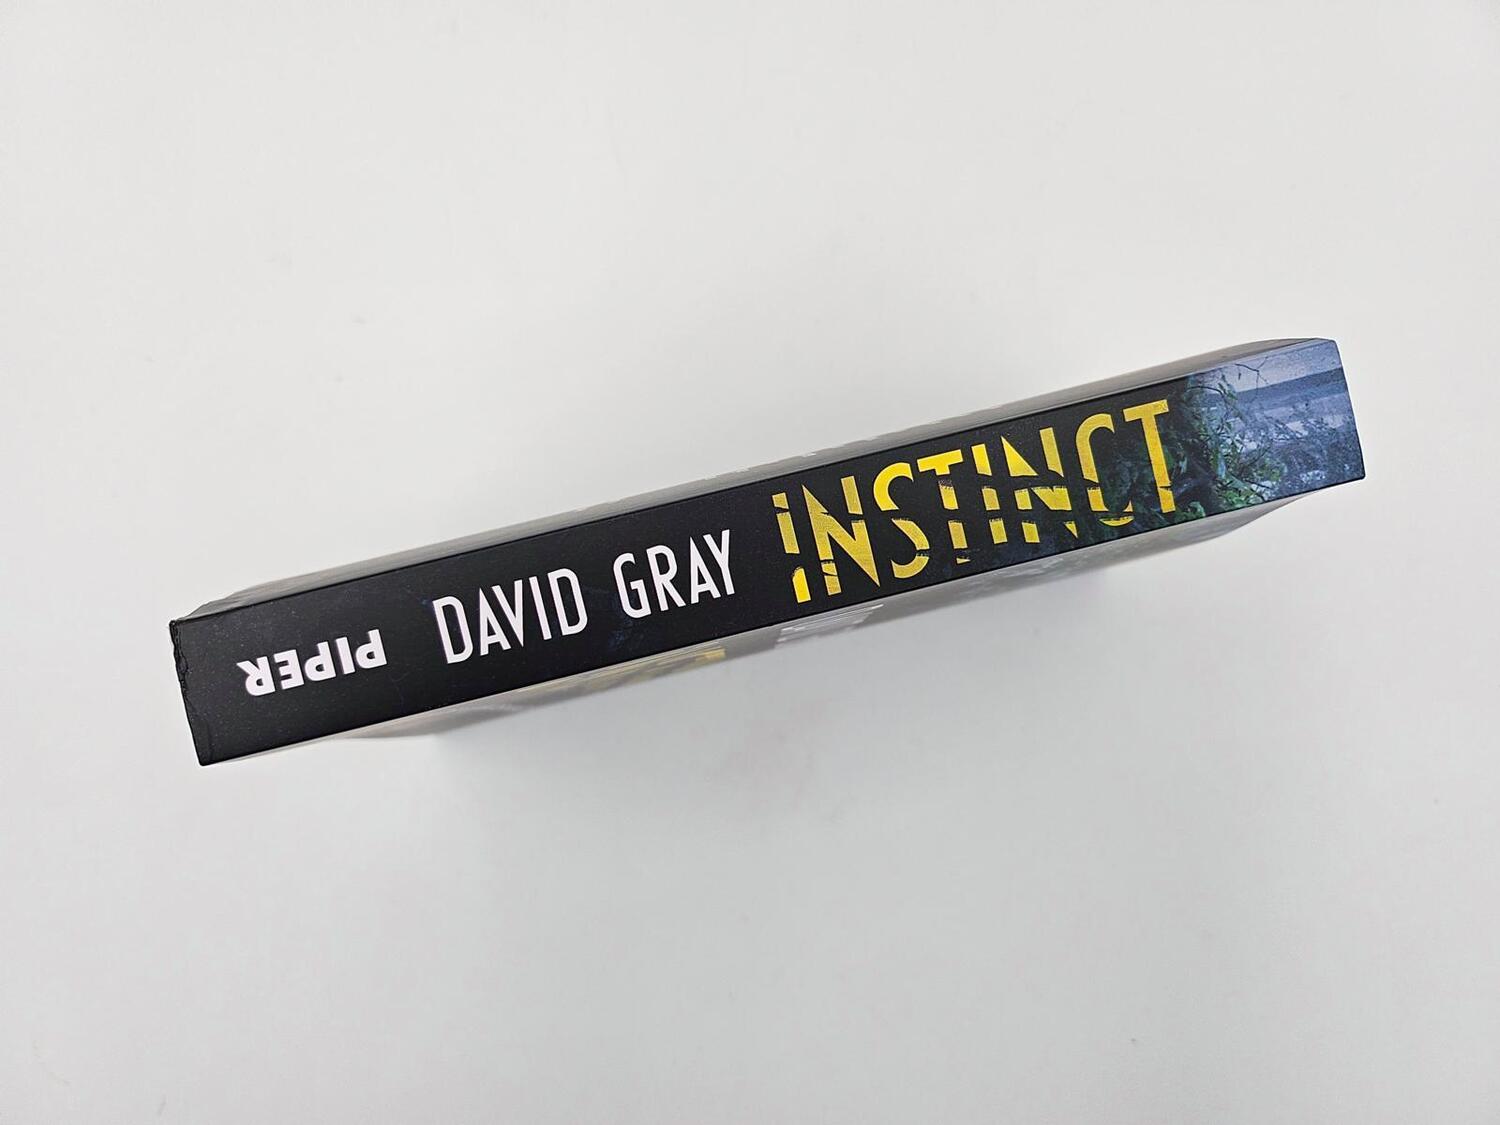 Bild: 9783492064590 | Instinct - Der Tod in den Wäldern | David Gray | Taschenbuch | 304 S.